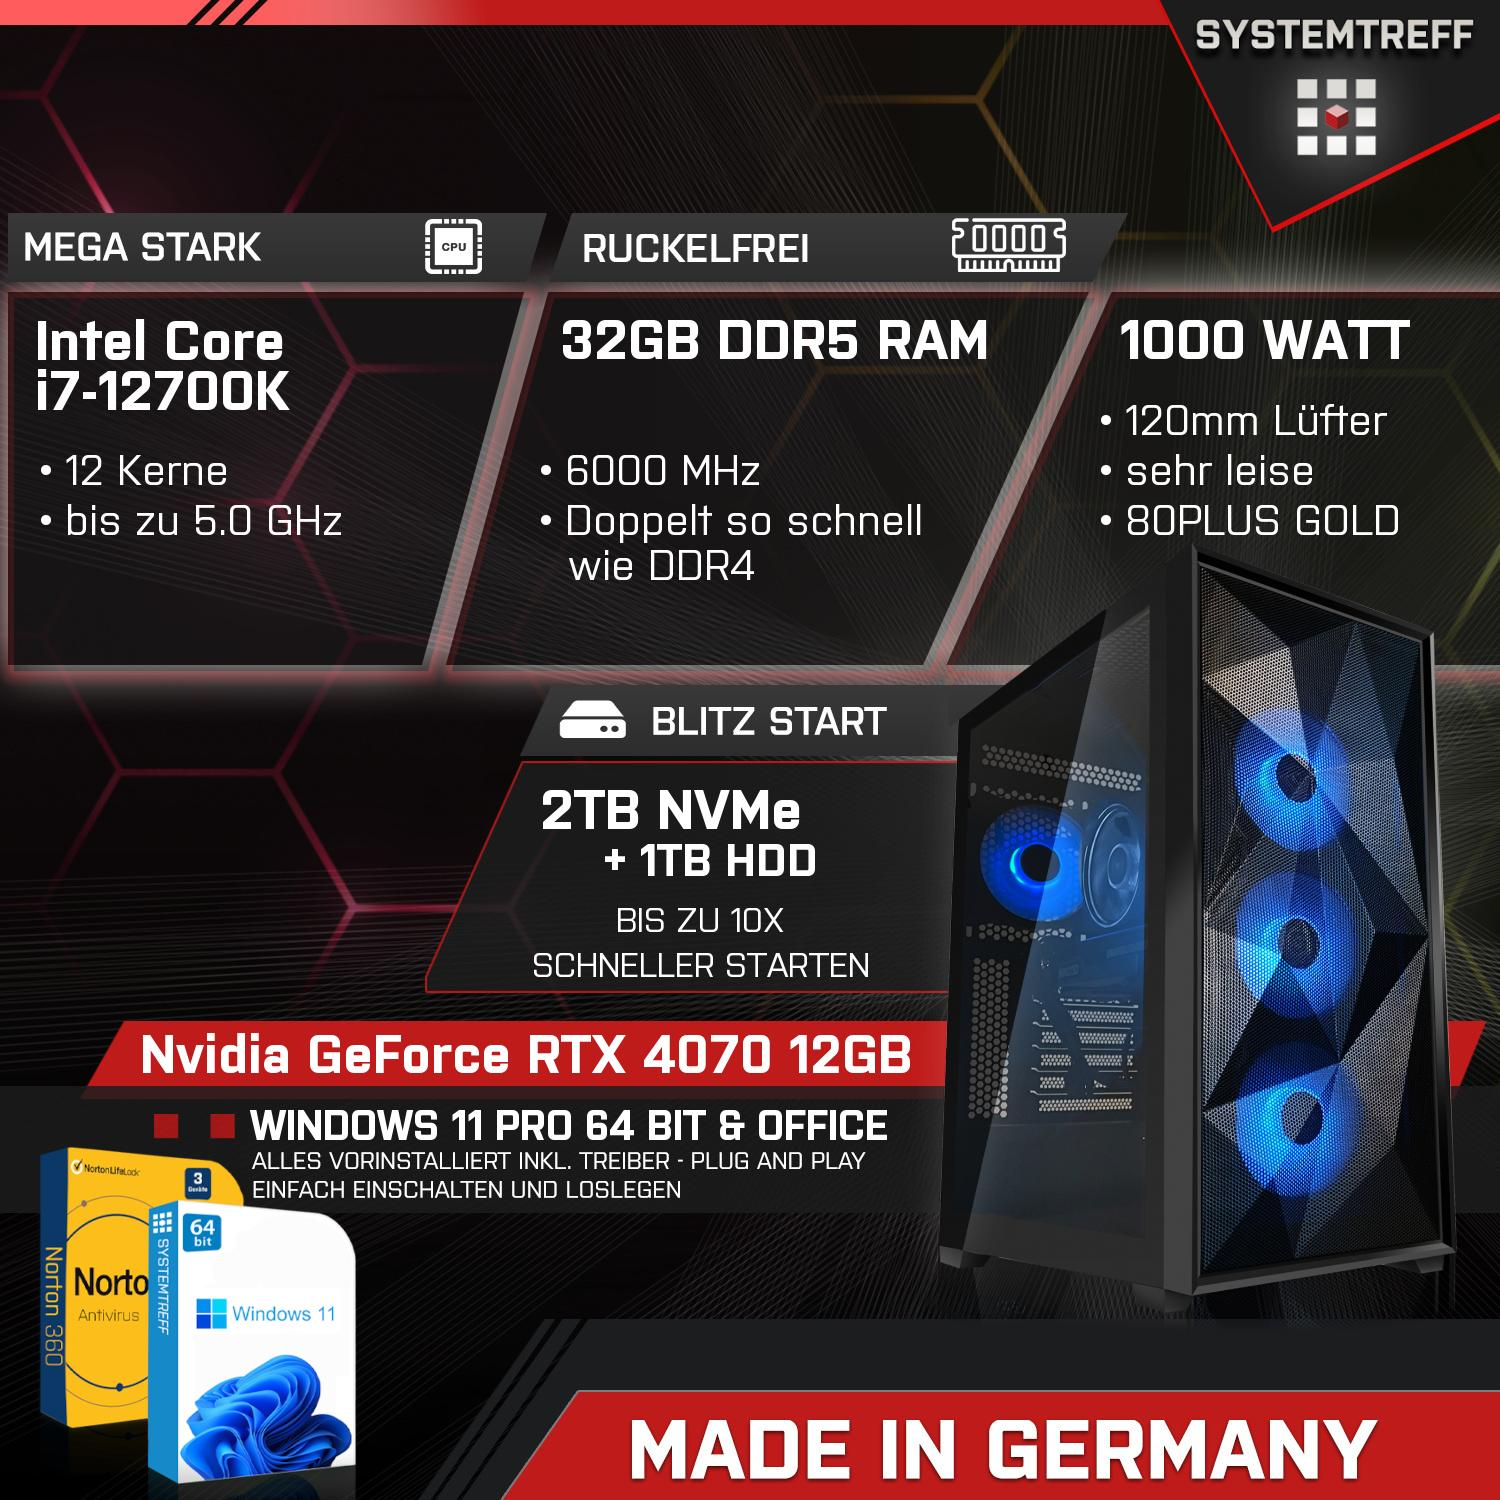 SYSTEMTREFF Gaming Komplett 4070 GeForce GB Prozessor, PC GB 12GB RTX 2000 i7-12700K Nvidia mSSD, 12 GDDR6, RAM, i7-12700K, Core Komplett GB Intel 32 mit